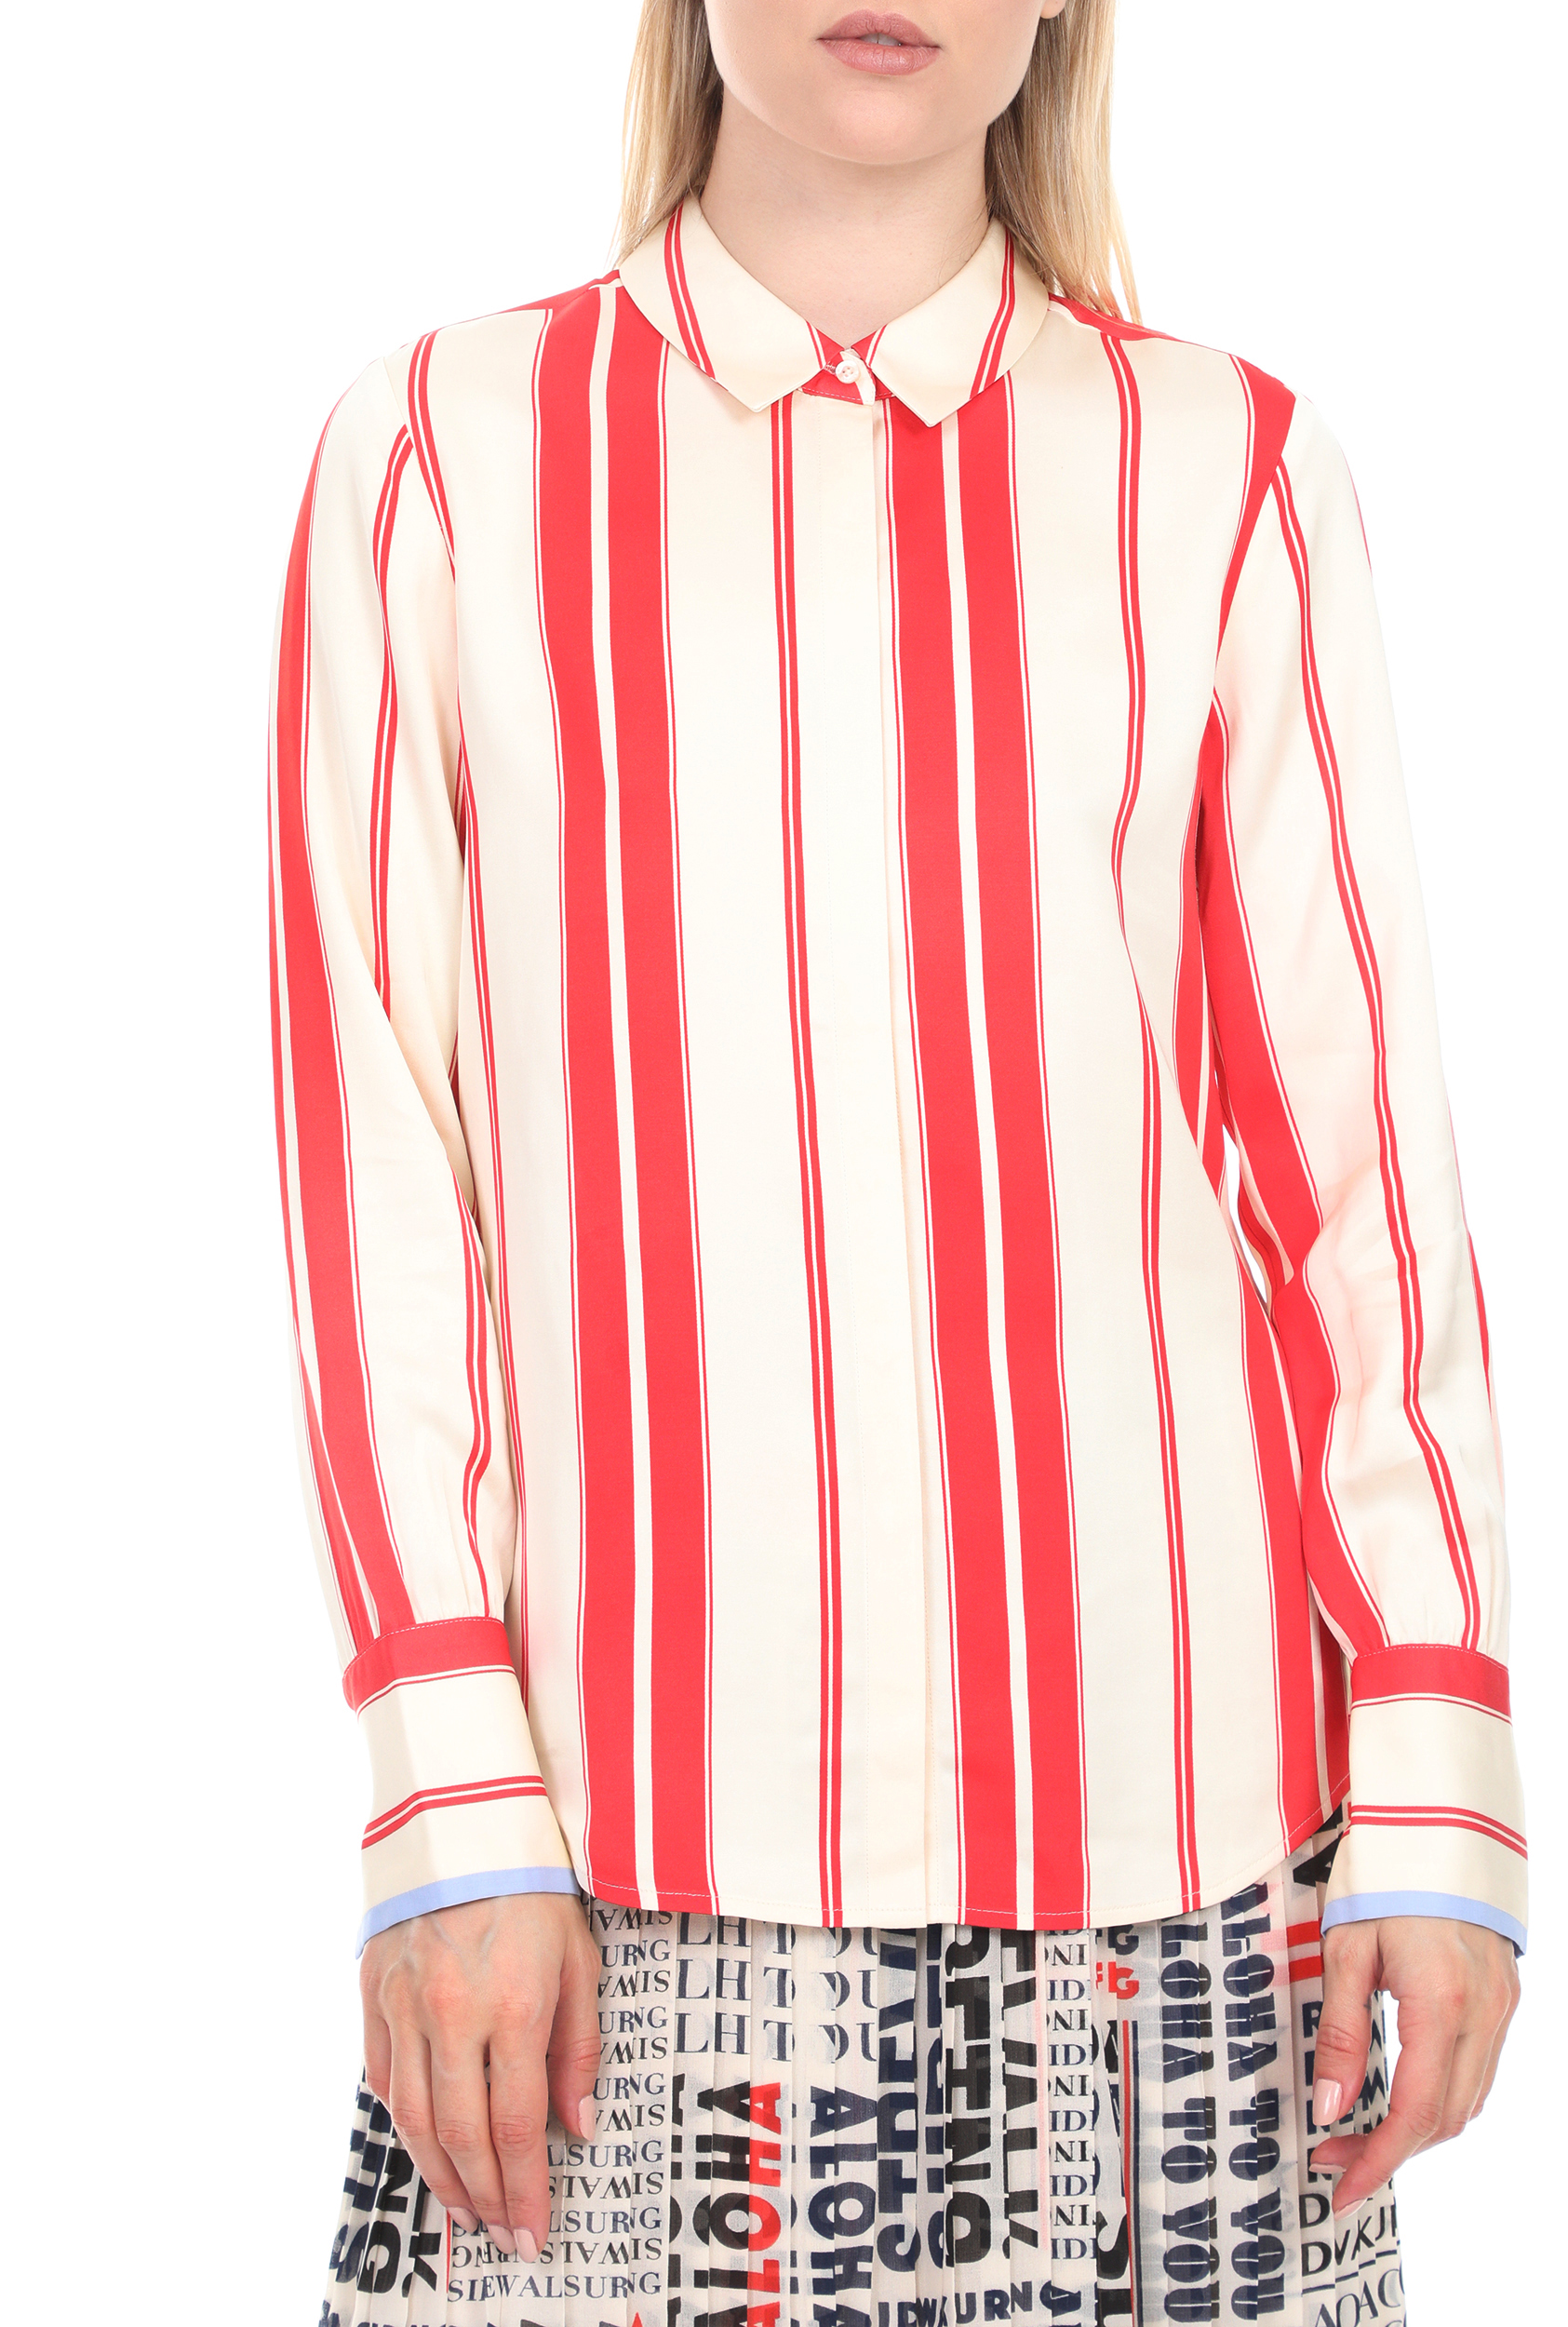 Γυναικεία/Ρούχα/Πουκάμισα/Μακρυμάνικα SCOTCH & SODA - Γυναικείο πουκάμισο SCOTCH & SODA λευκό κόκκινο